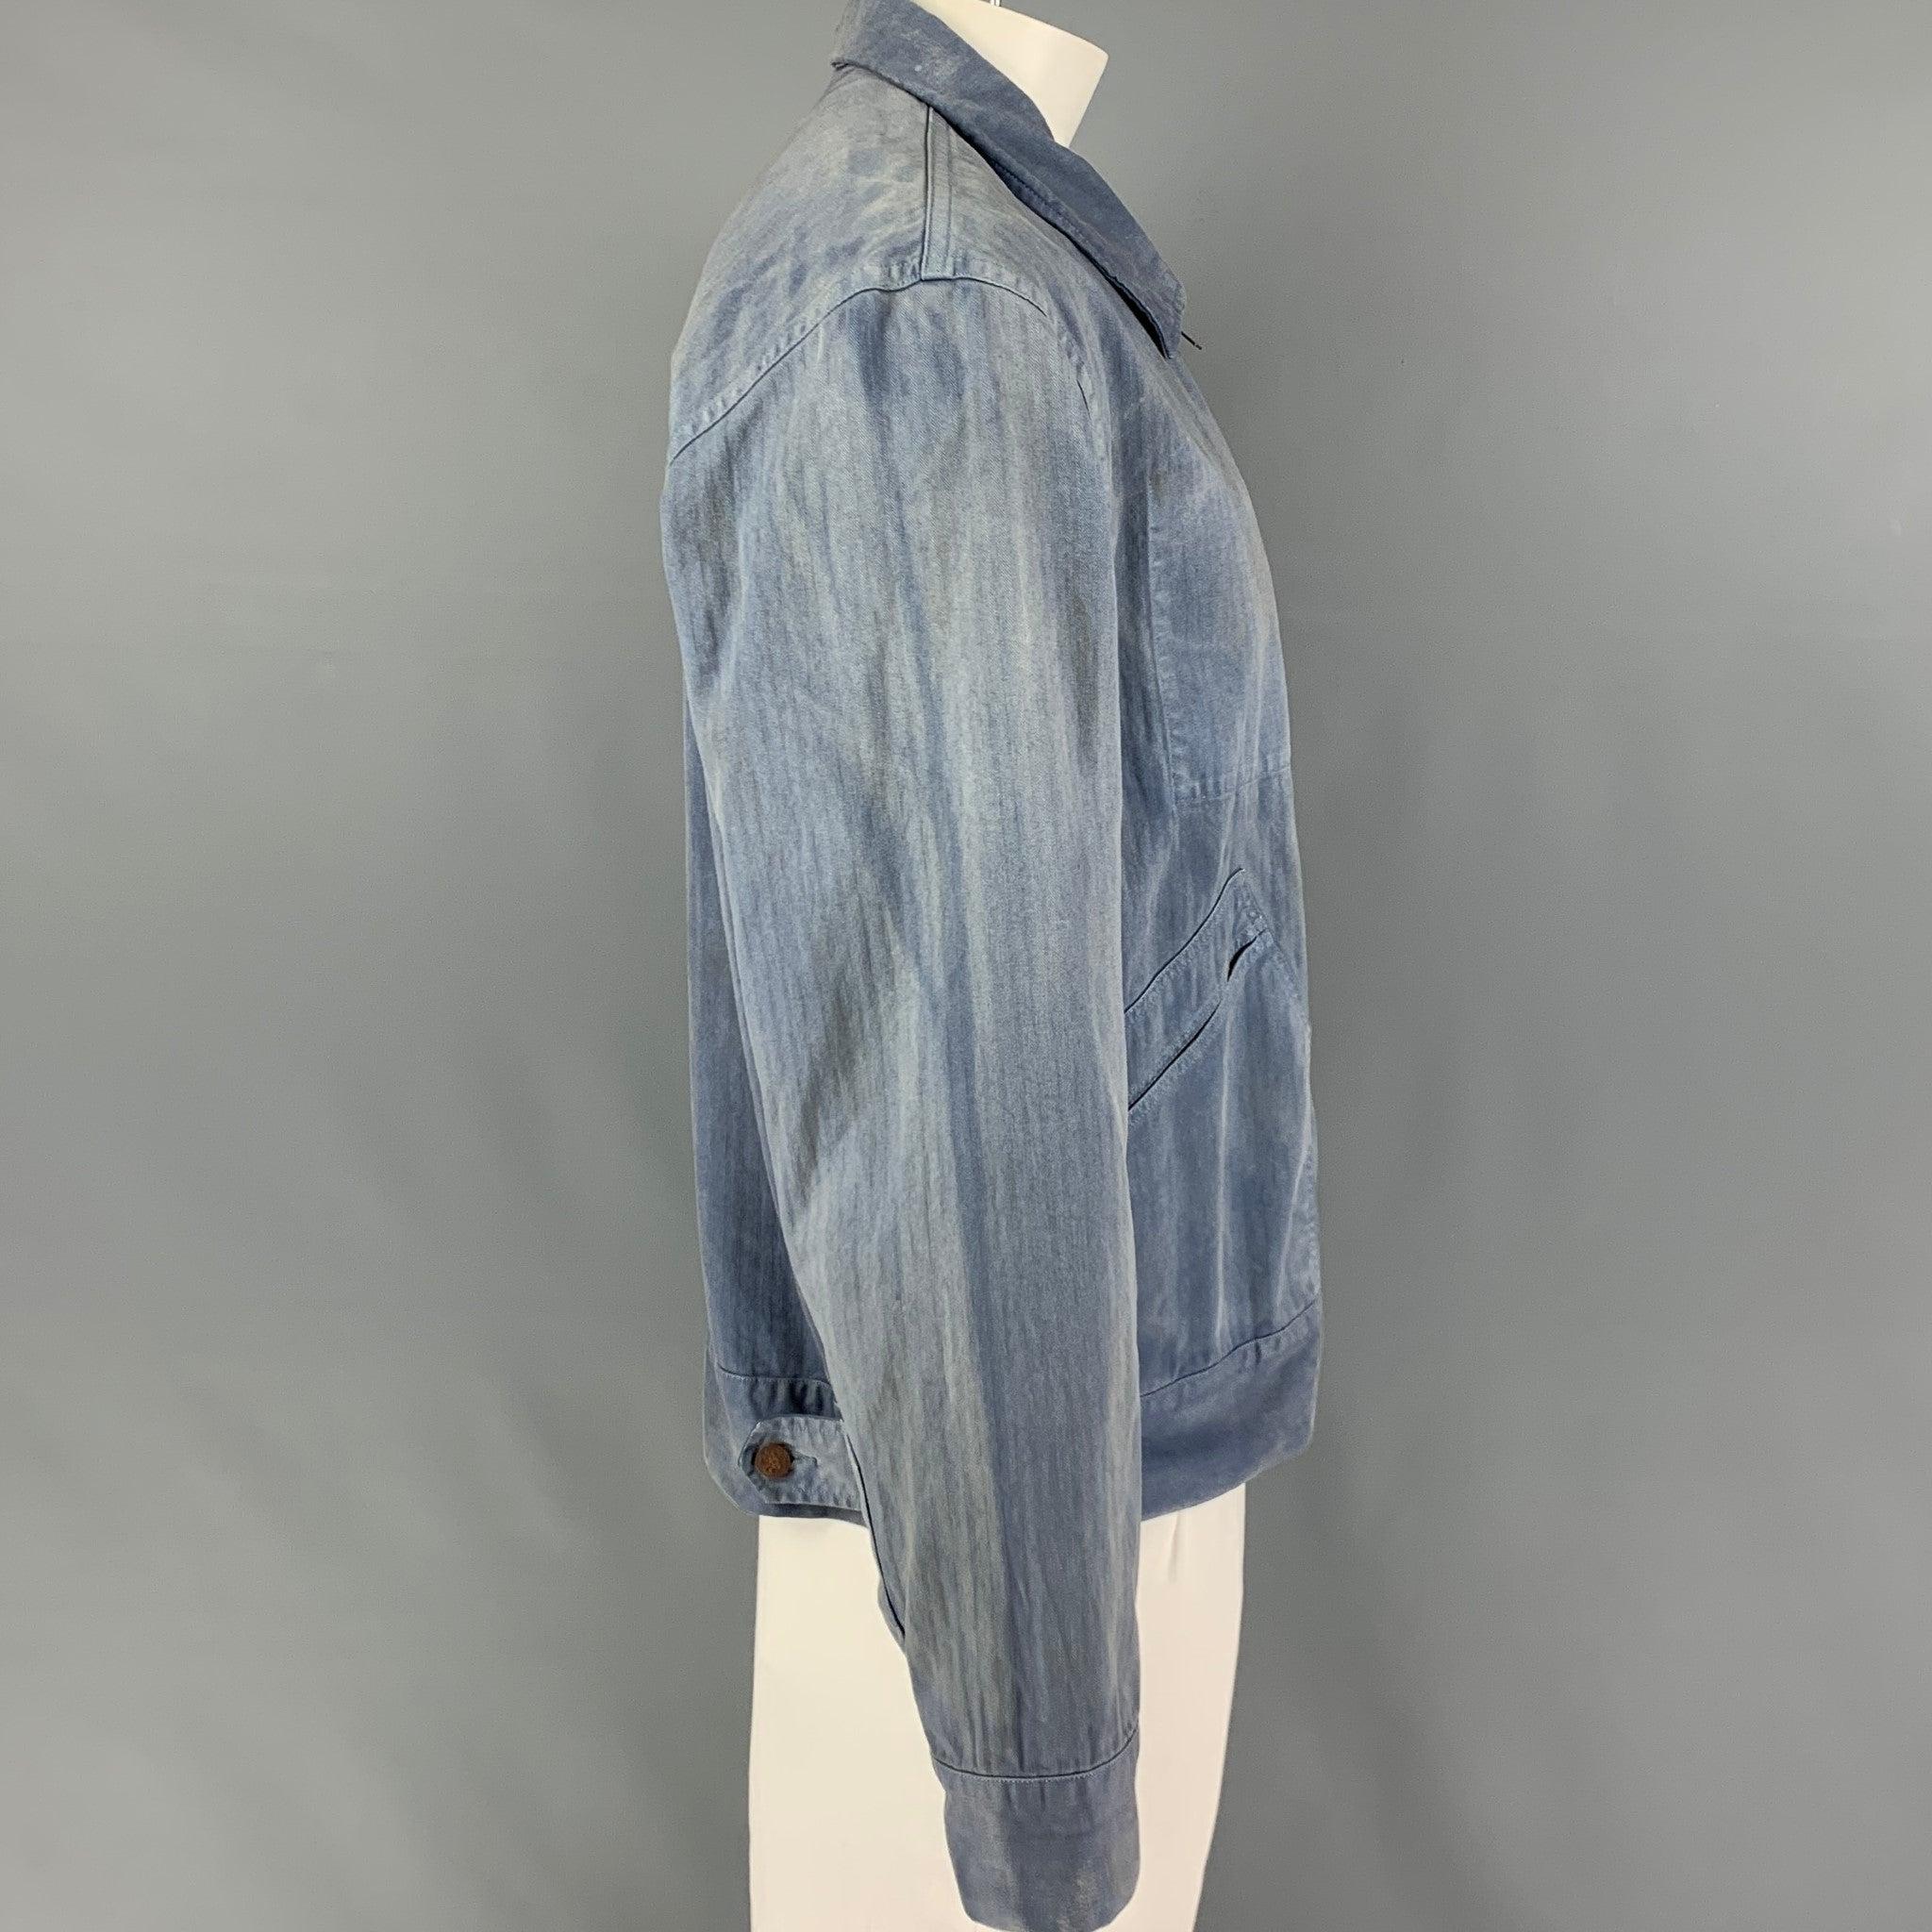 La veste RRL by RALPH LAUREN se présente dans un coton lavé bleu clair et présente un empiècement sur la manche, des poches avant, un col rond et une fermeture à glissière intégrale.
Très bien
Etat d'occasion. 

Marqué :   XL 

Mesures : 
 
Épaule :